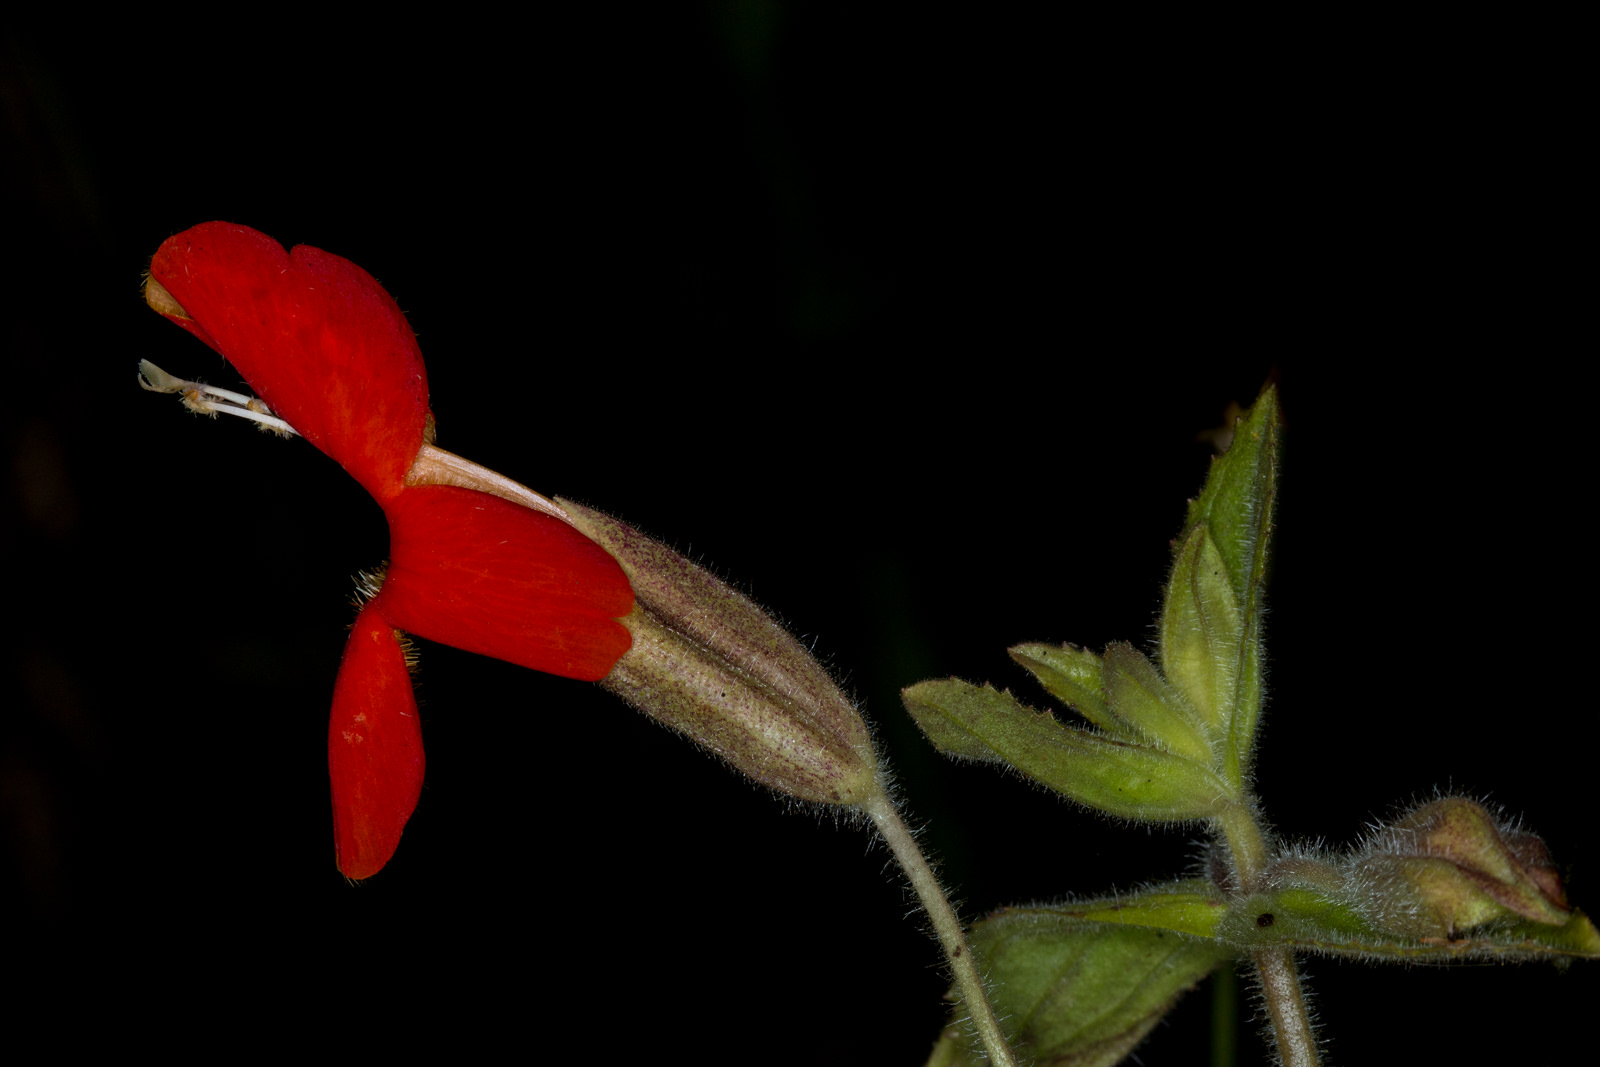  Scarlet Monkey Flower - <em>Erythranthe cardinalis</em>